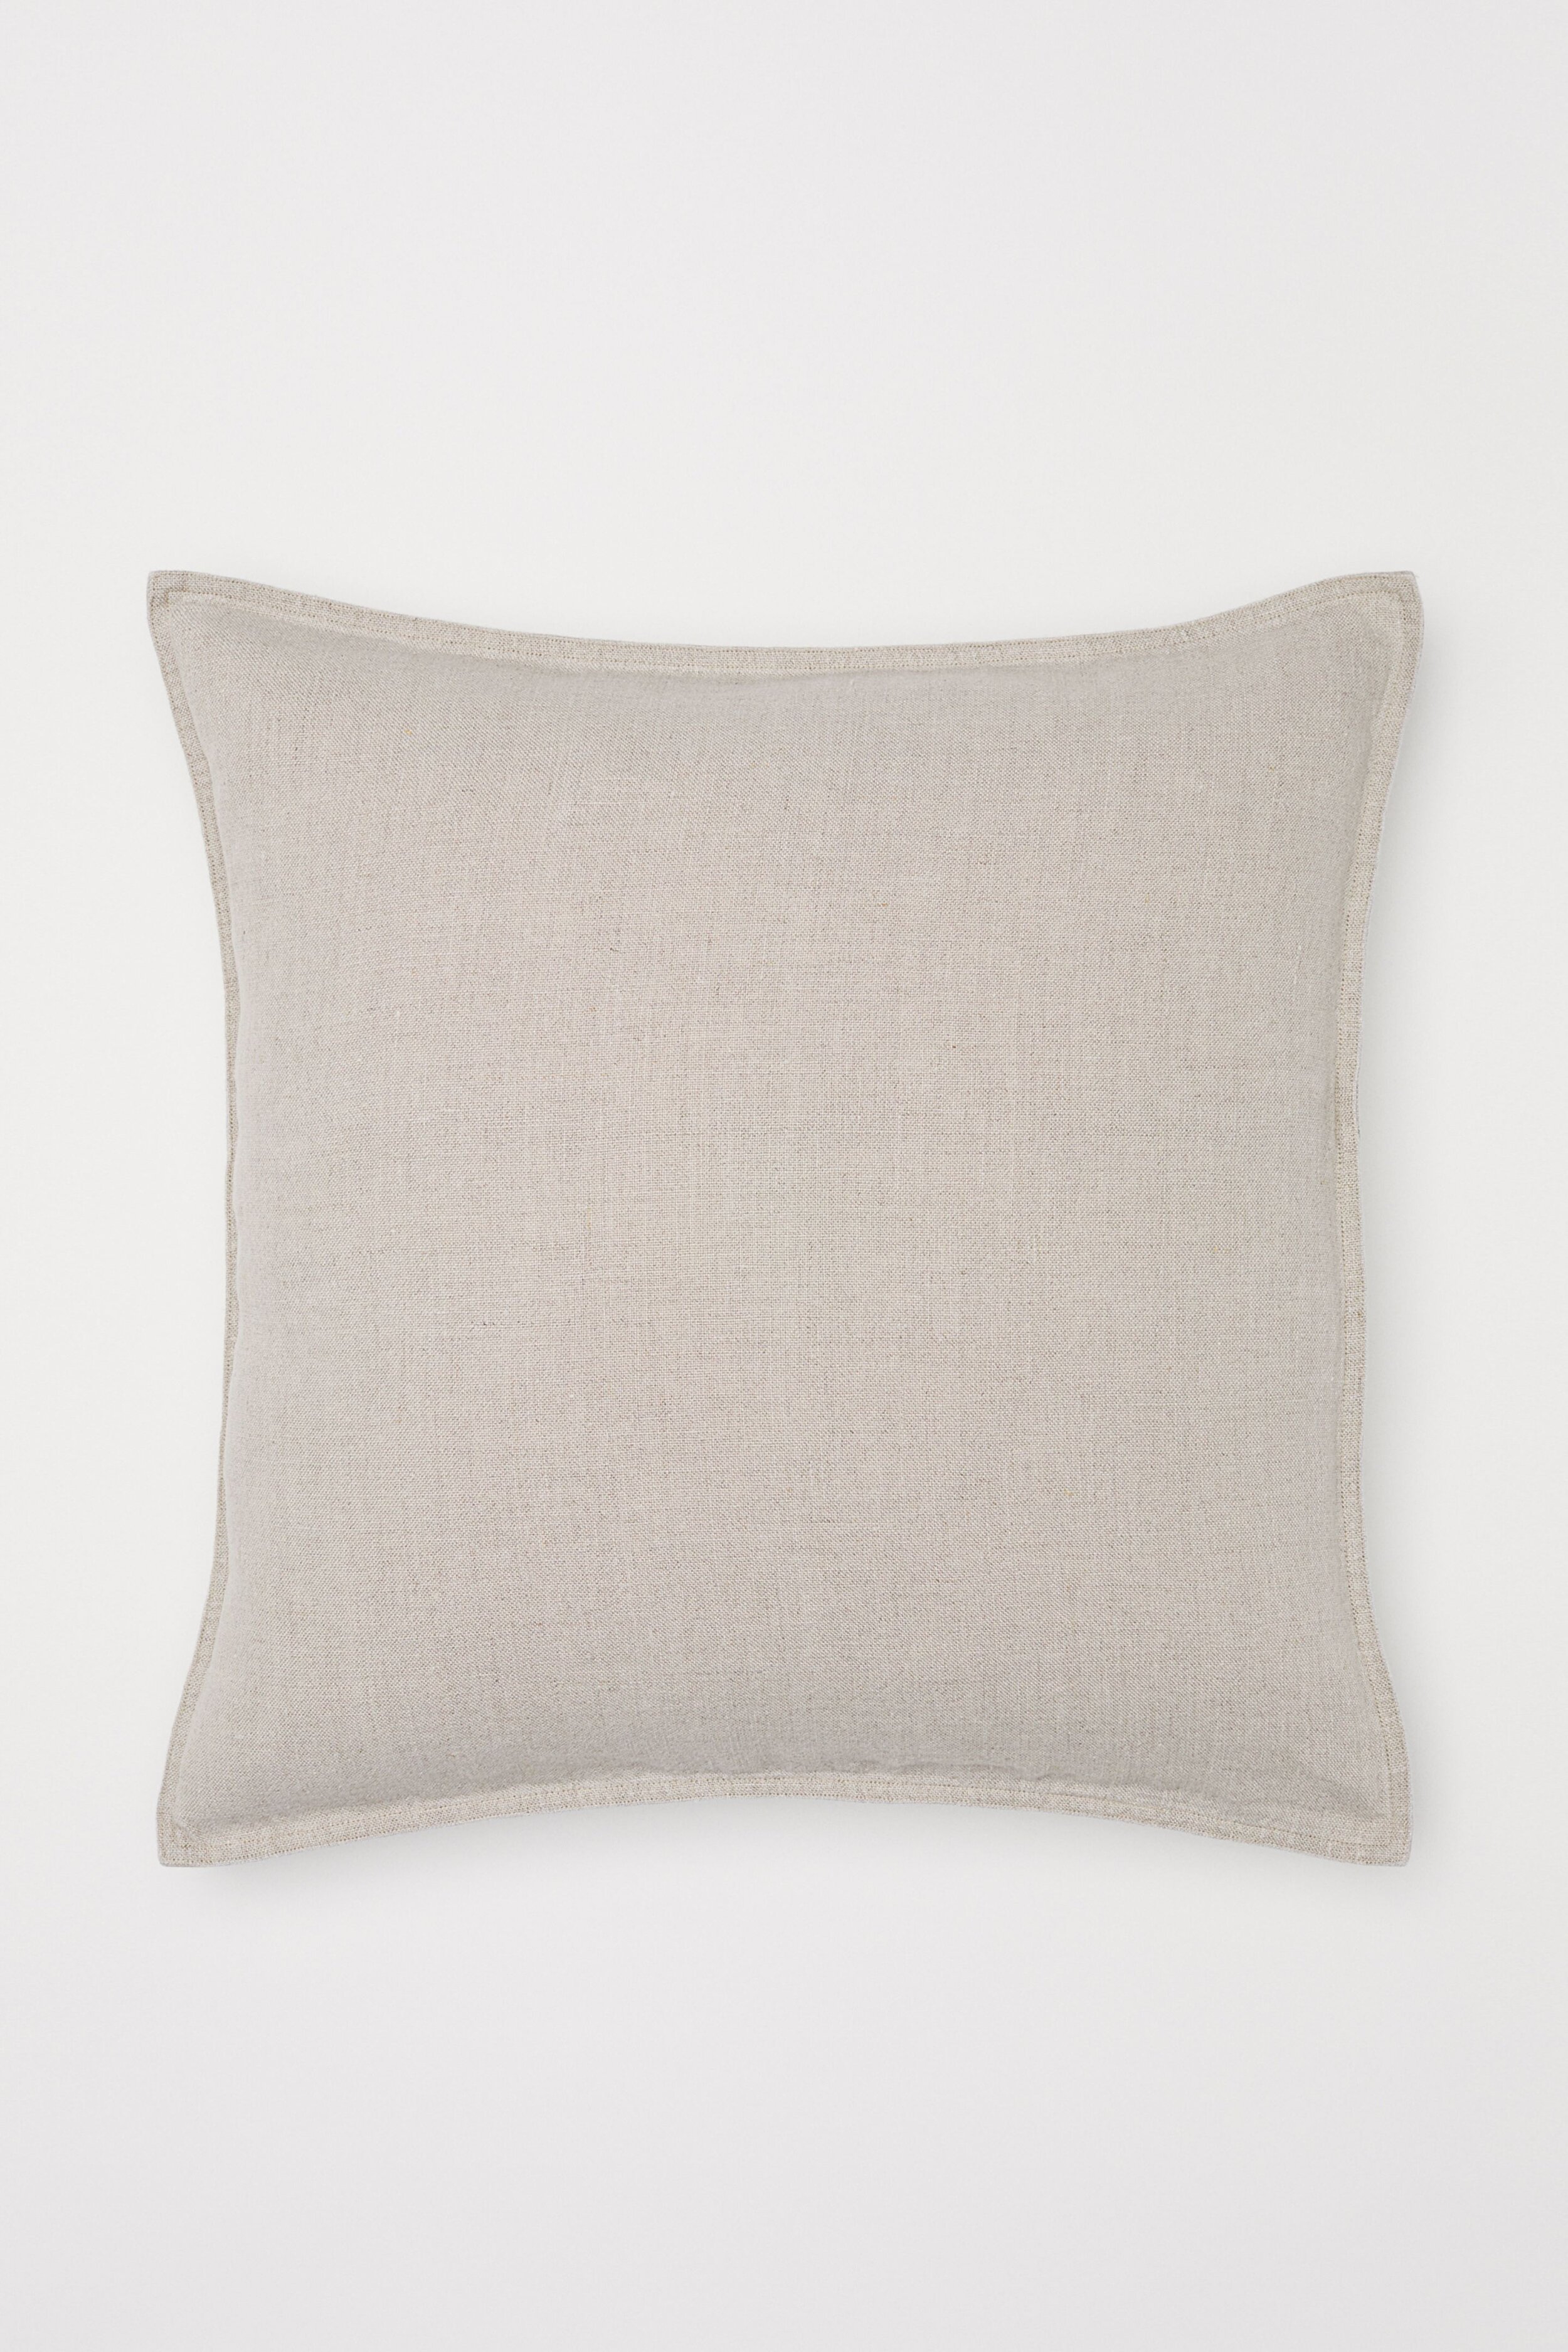 H&amp;M Linen Pillows